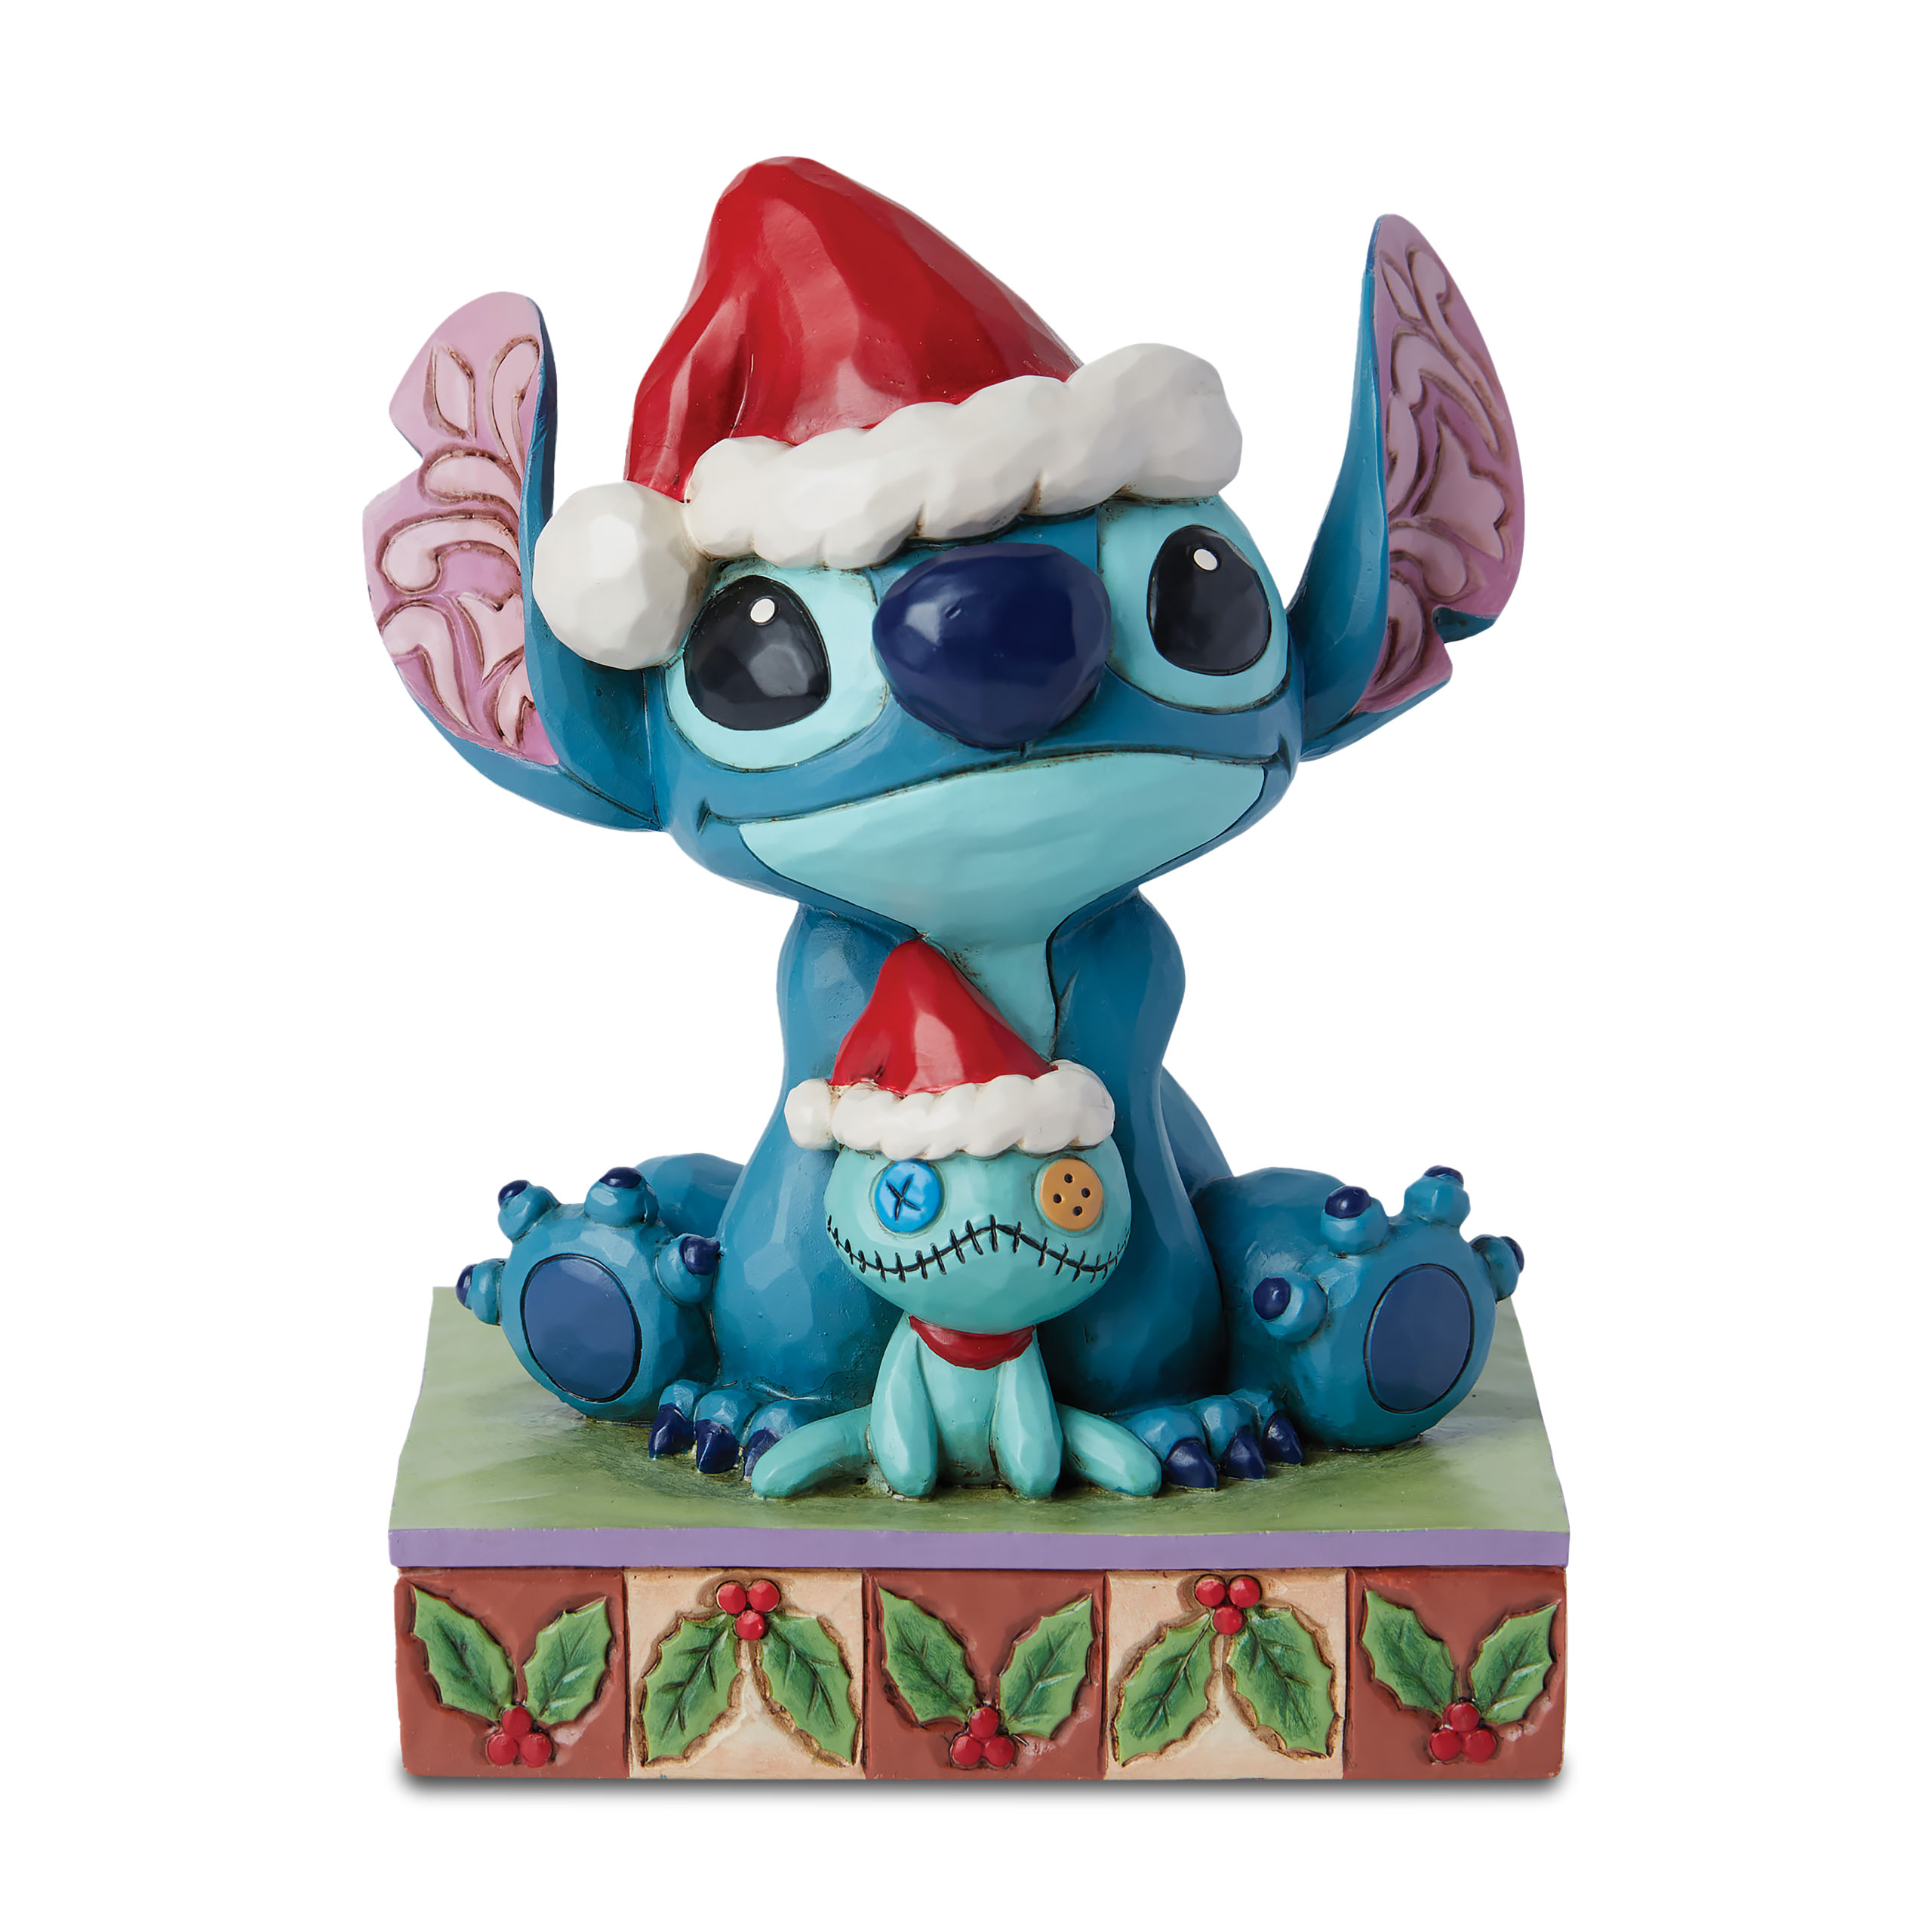 Stitch Santa with Quirk Figure - Lilo & Stitch